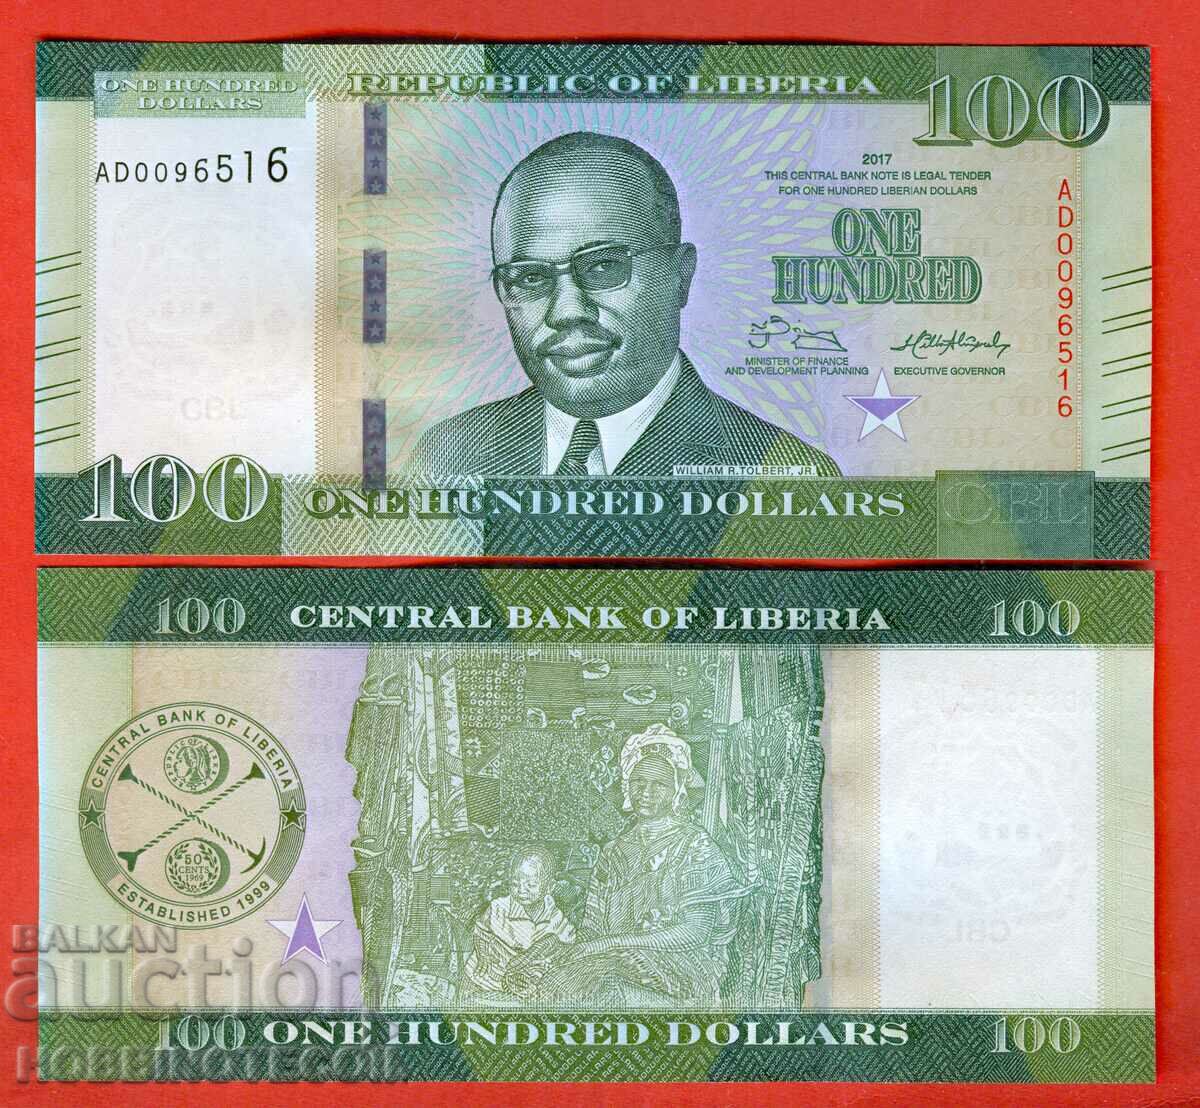 LIBERIA LIBERIA $100 issue issue 2017 NEW UNC